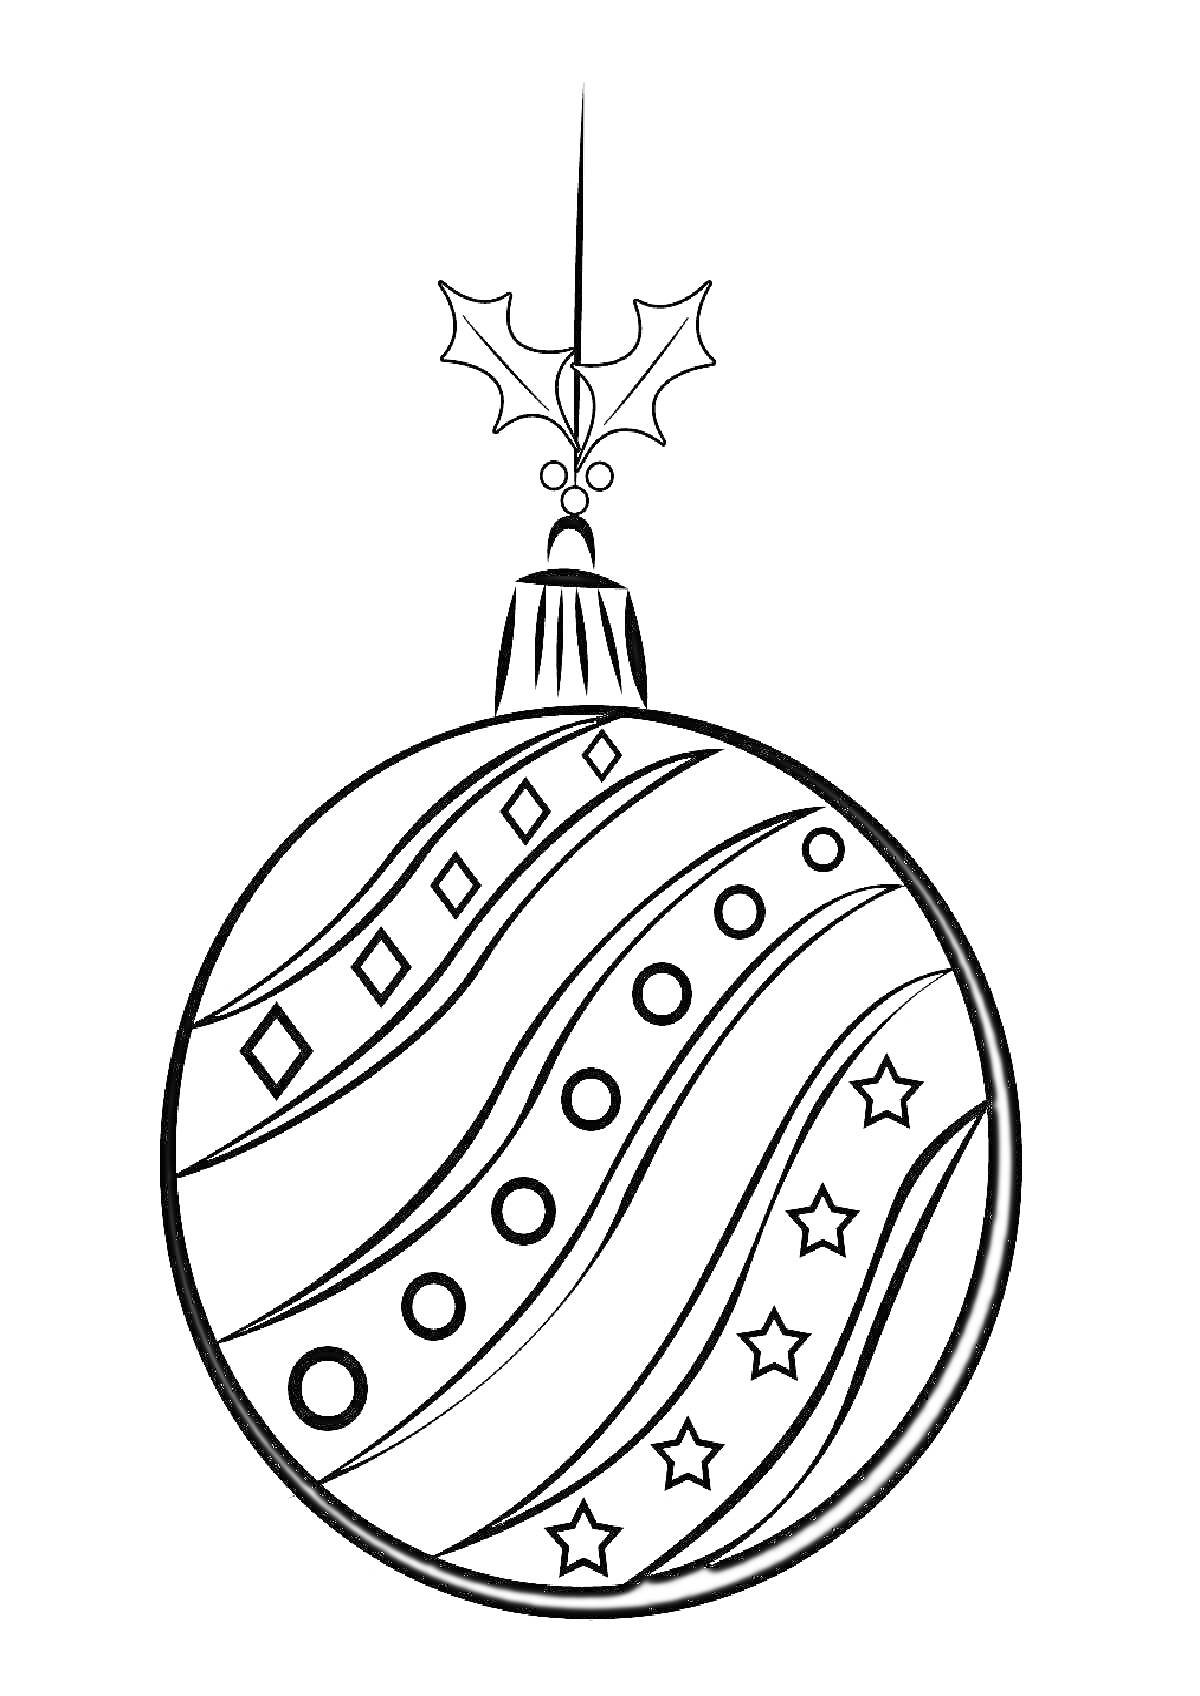 Раскраска новогодний шар с узорами из ромбов, кругов и звезд, верхушка шарика с ветками остролиста